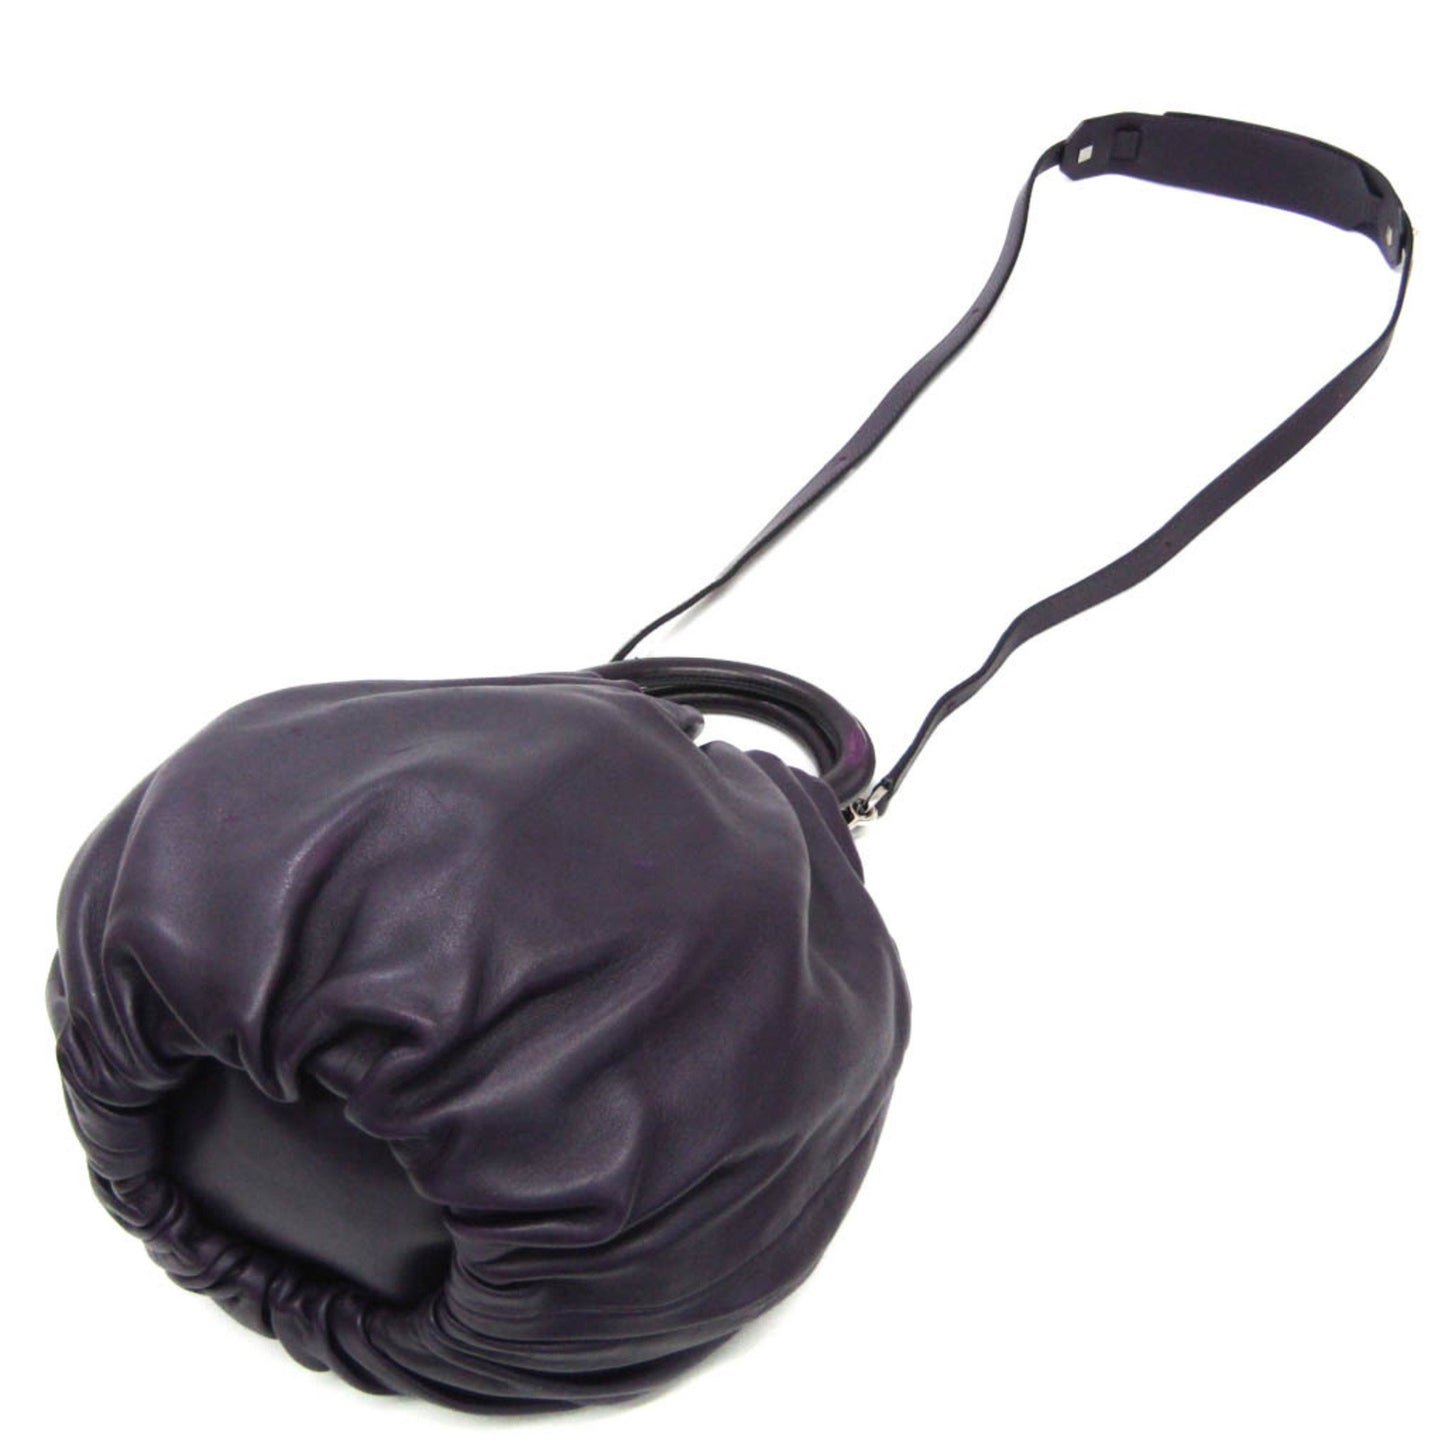 Loewe Women's Elegant Purple Leather Bag in Purple